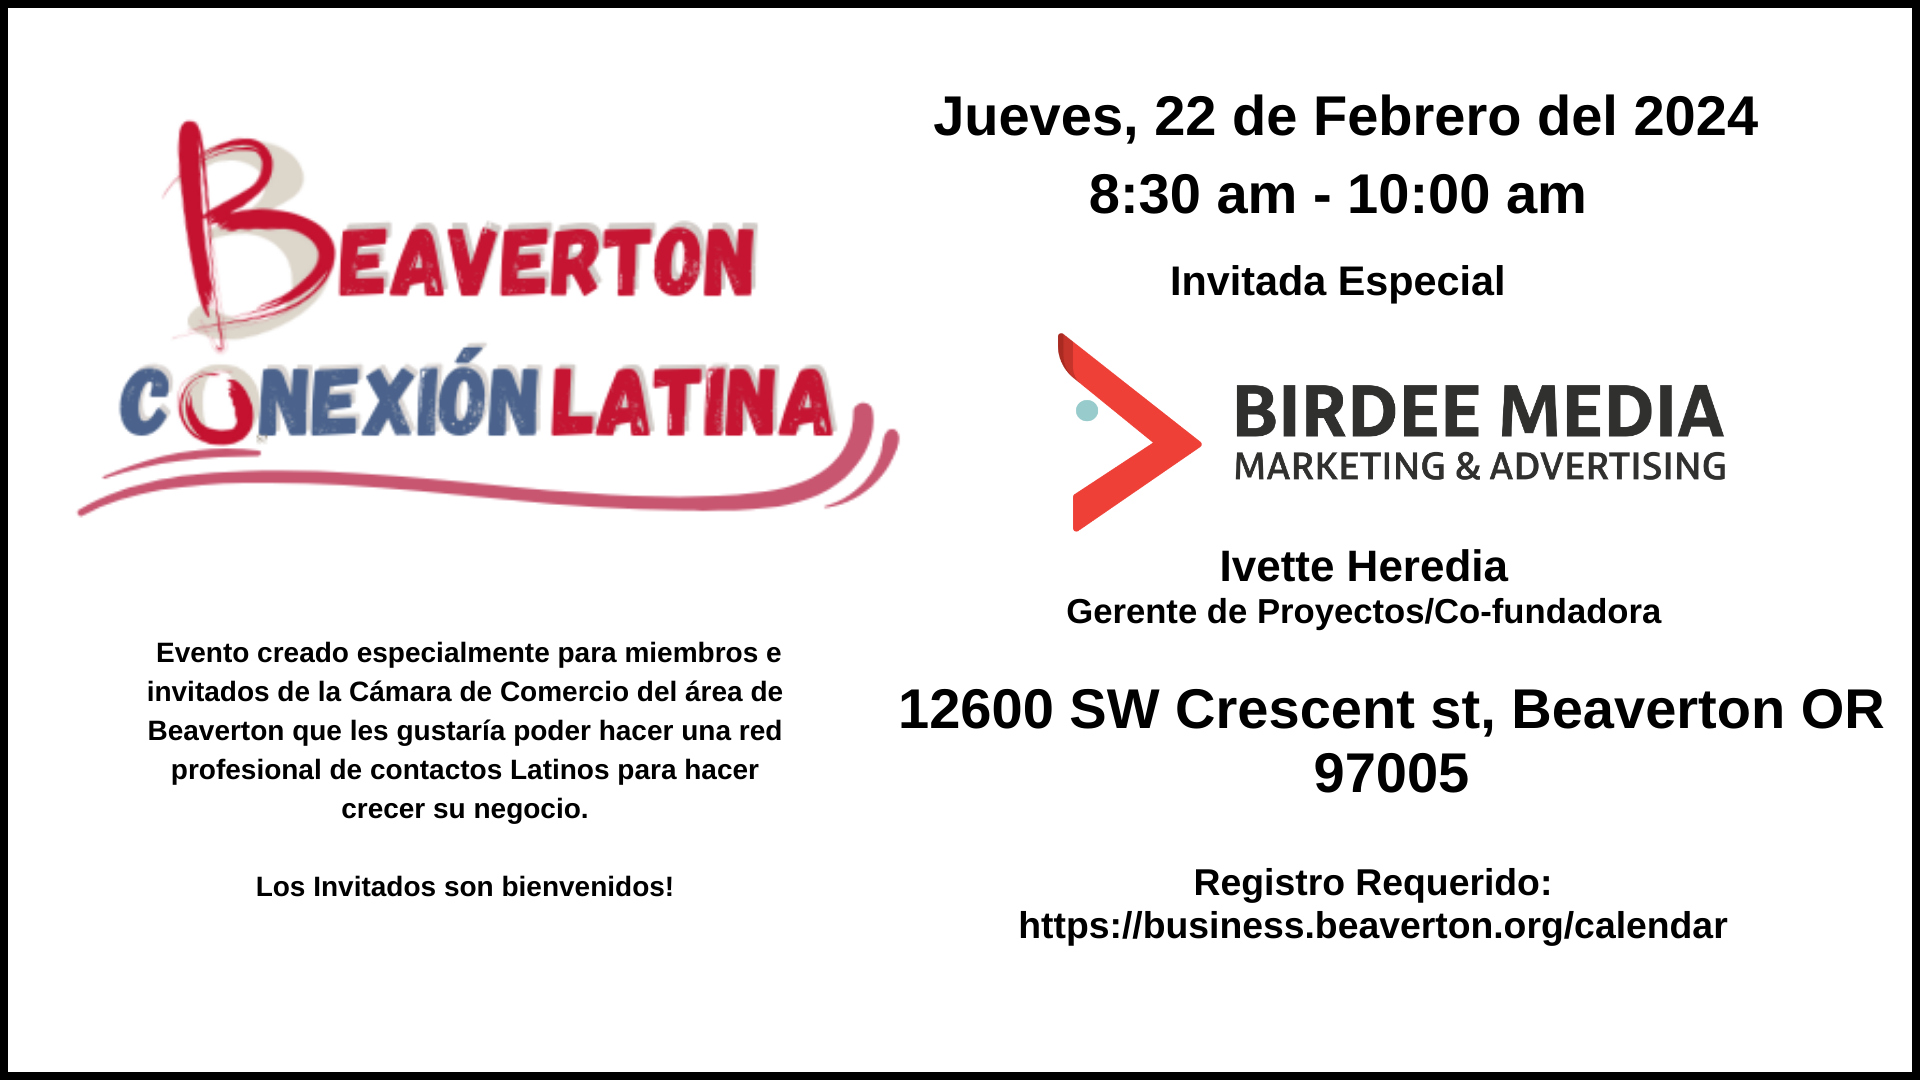  Beaverton Conexión Latina